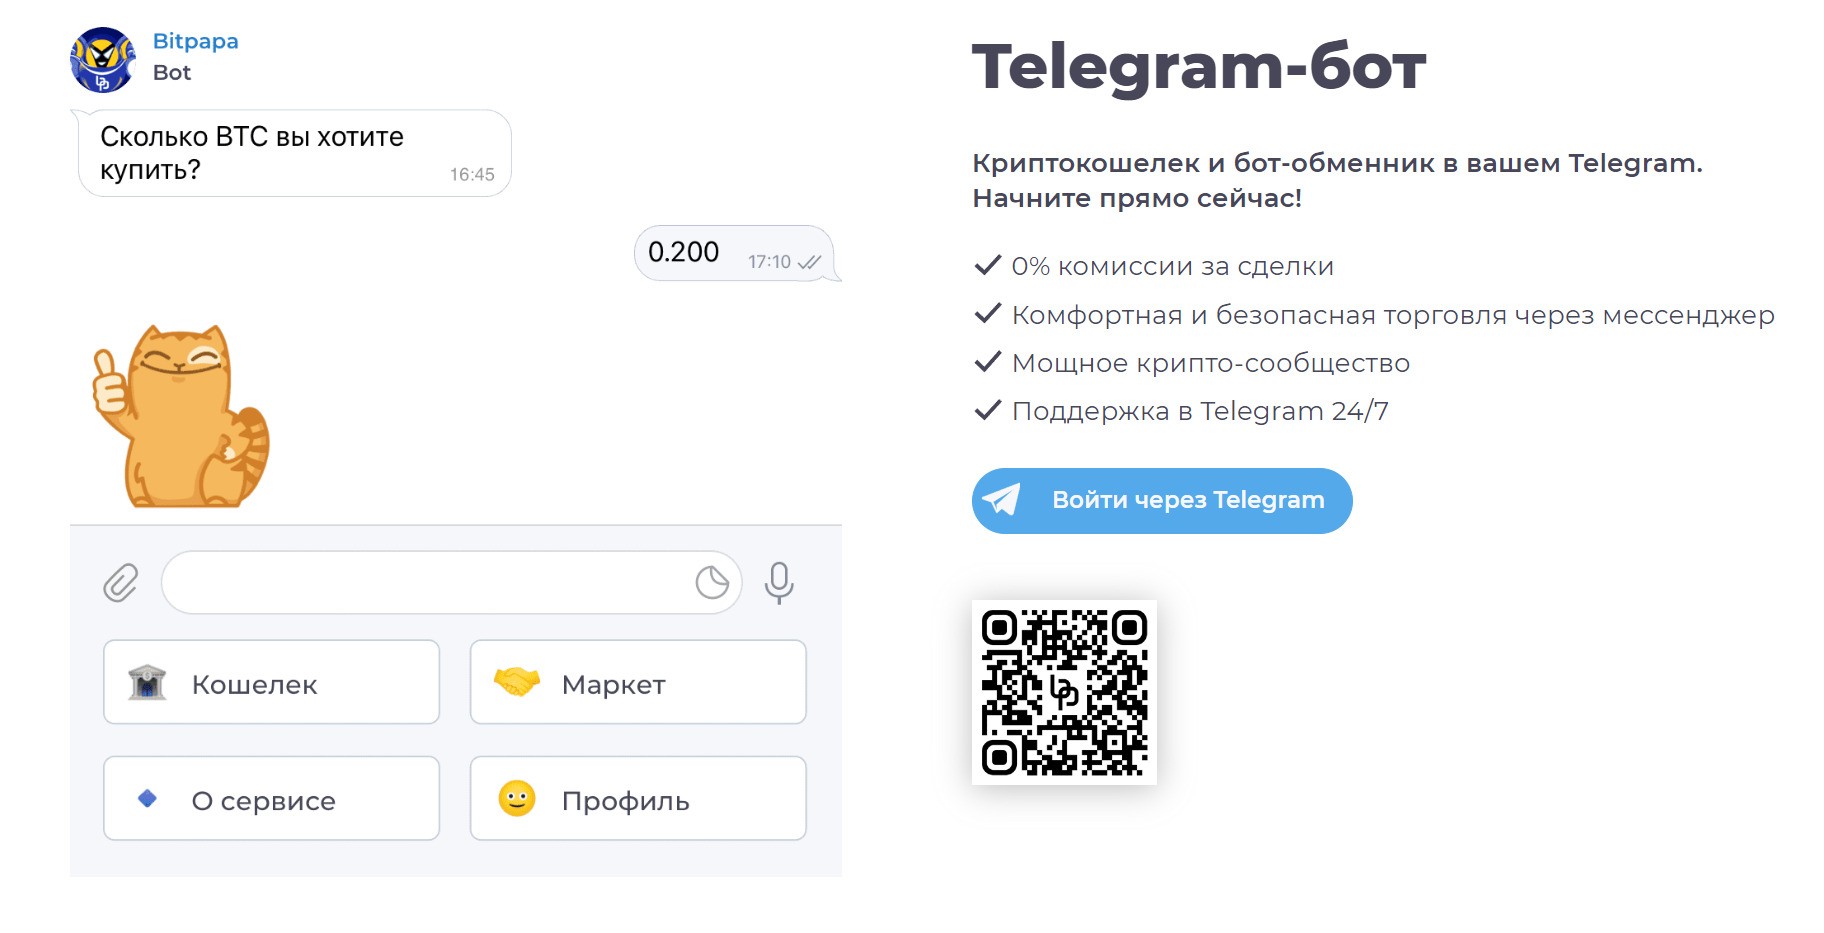 Телеграм-бот Битпапа